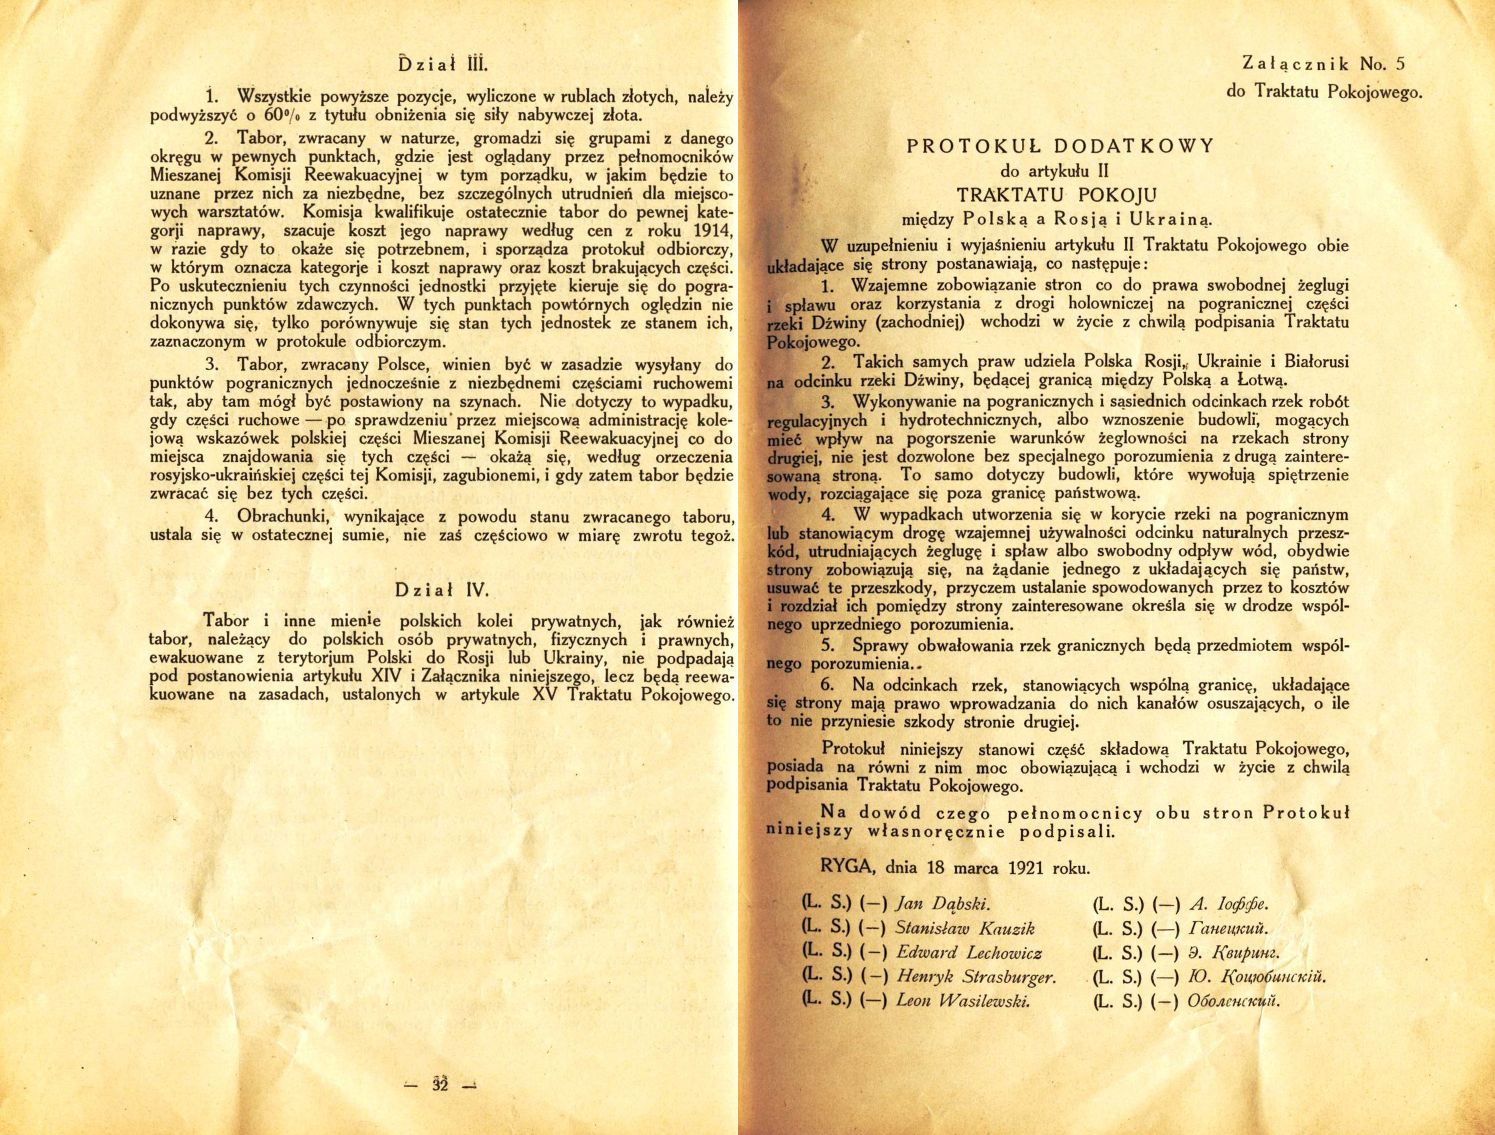 Traktat Pokoju między Polską a Rosją i Ukrainą podpisany w Rydze dnia 18 marca 1921 roku, s. 32-33, Akta Jana Dąbskiego, sygn. 5